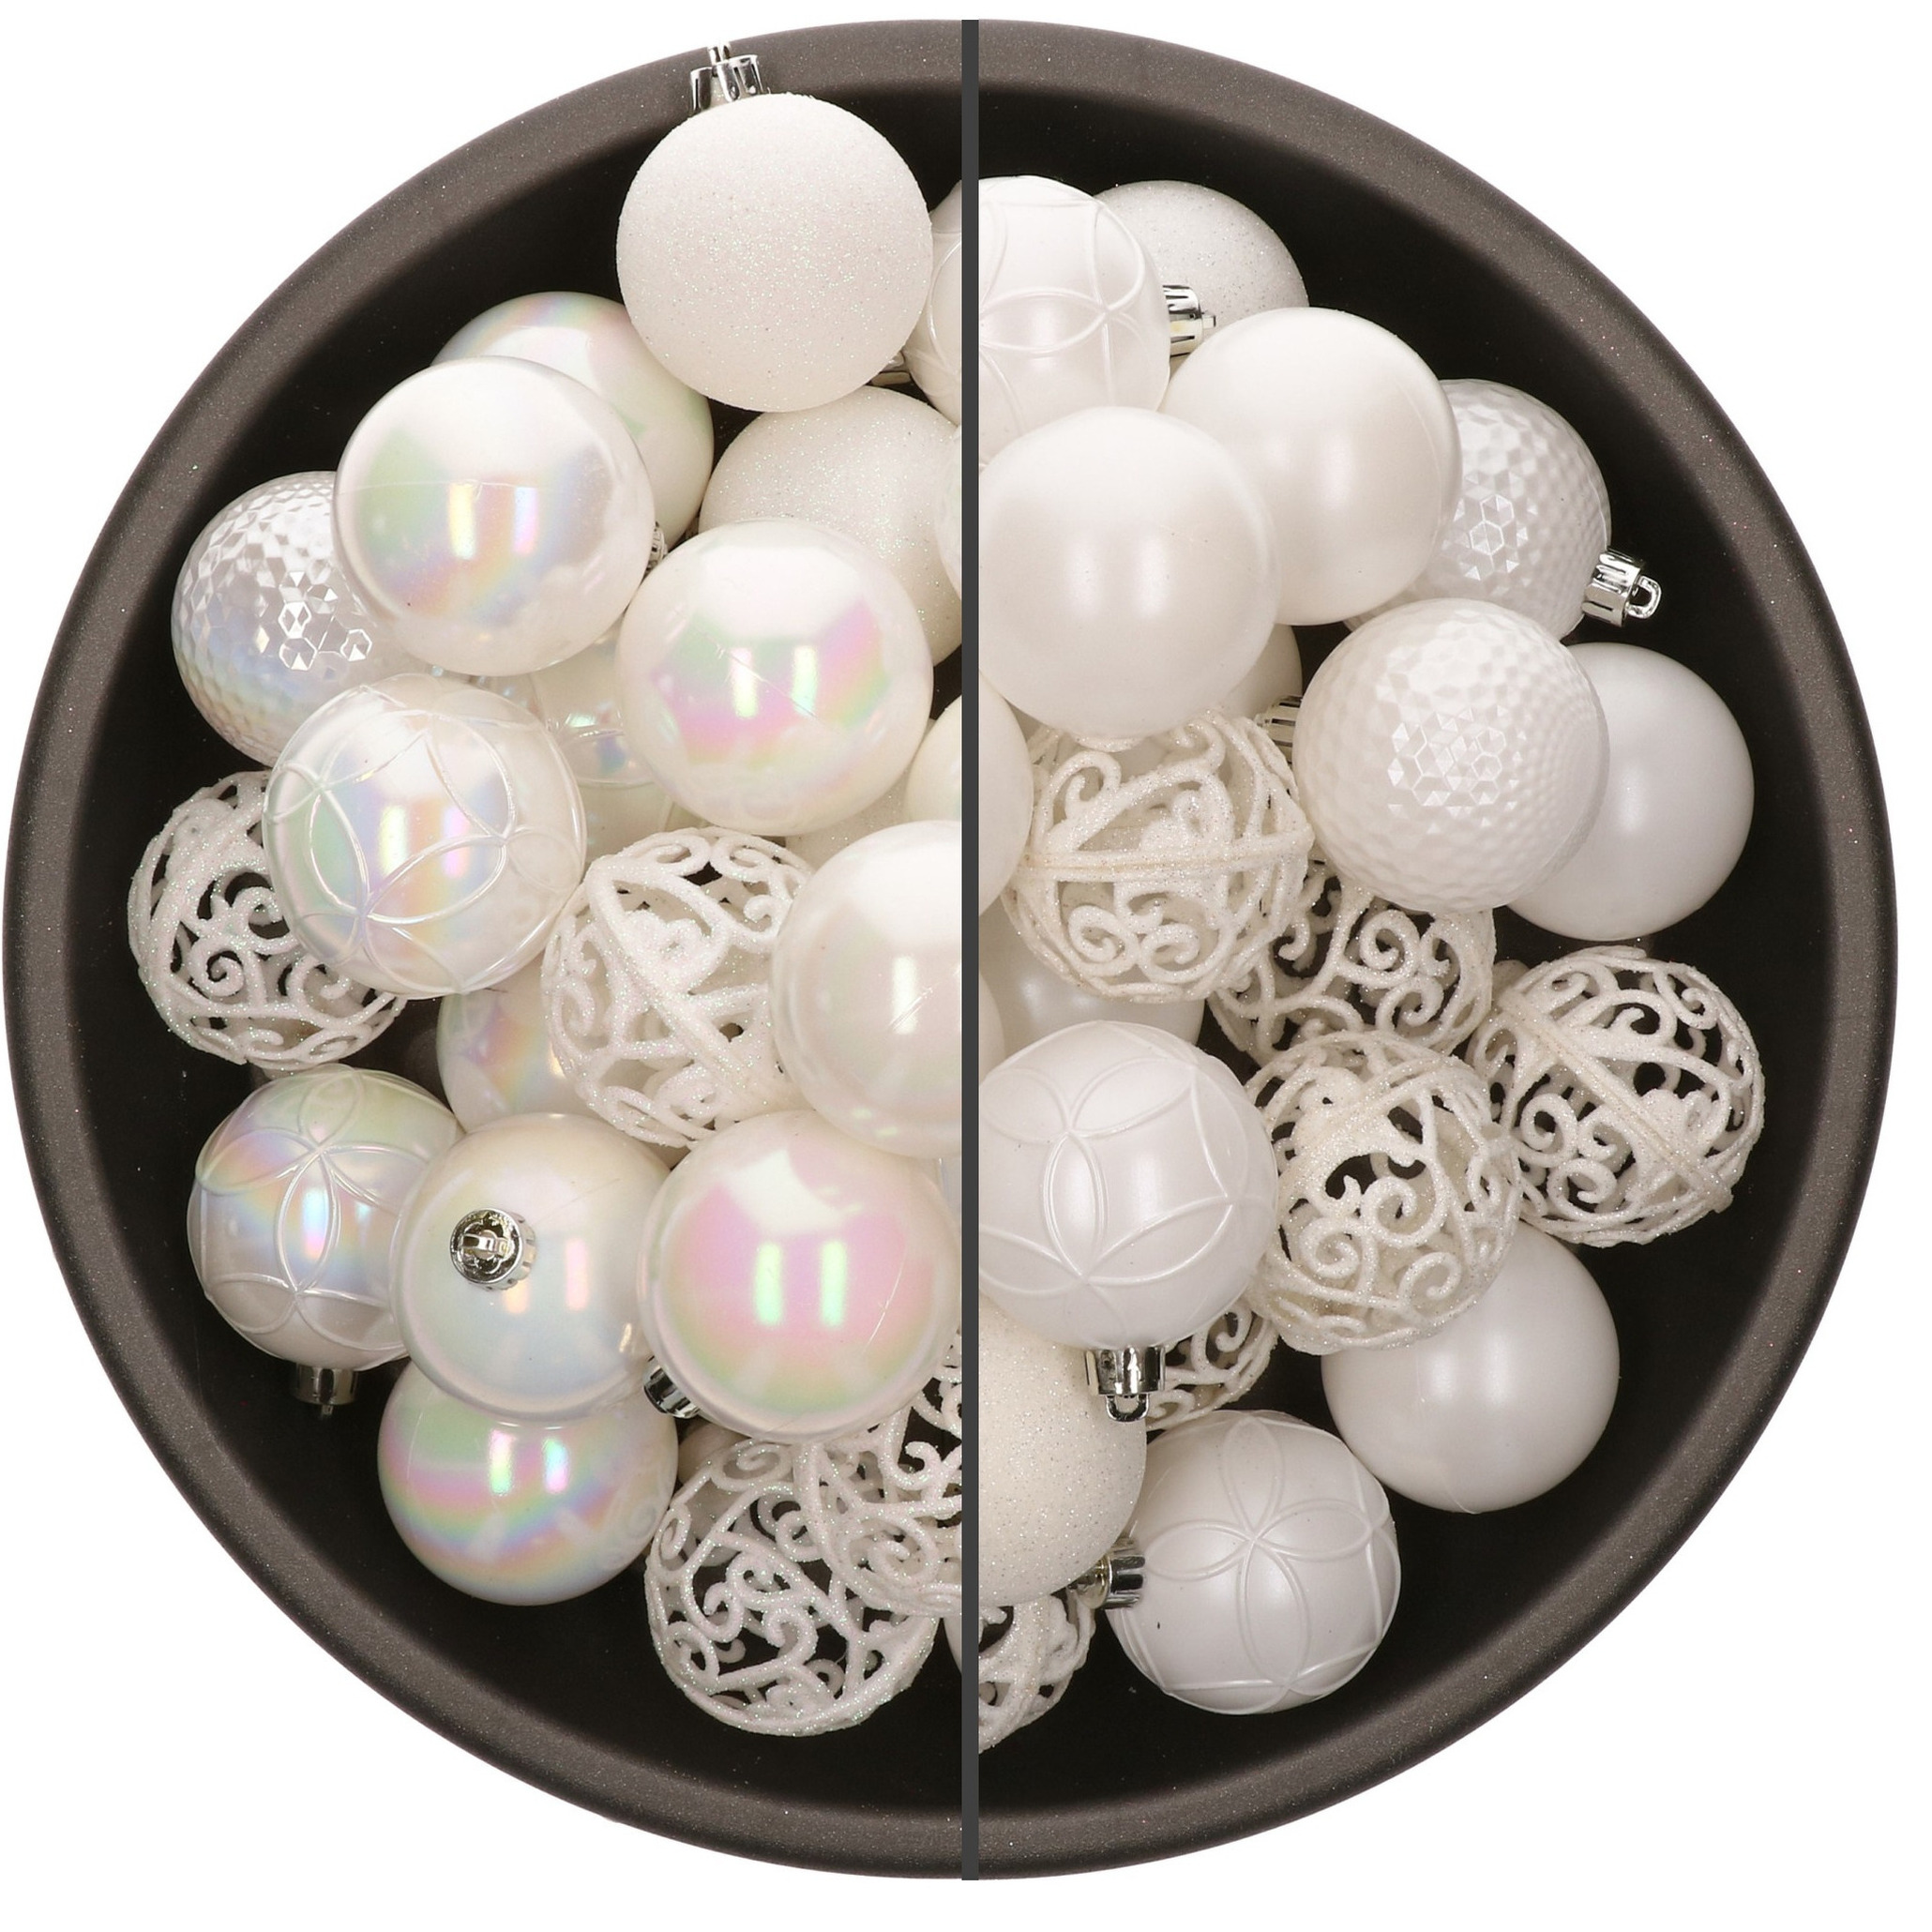 74x stuks kunststof kerstballen mix van parelmoer wit en wit 6 cm